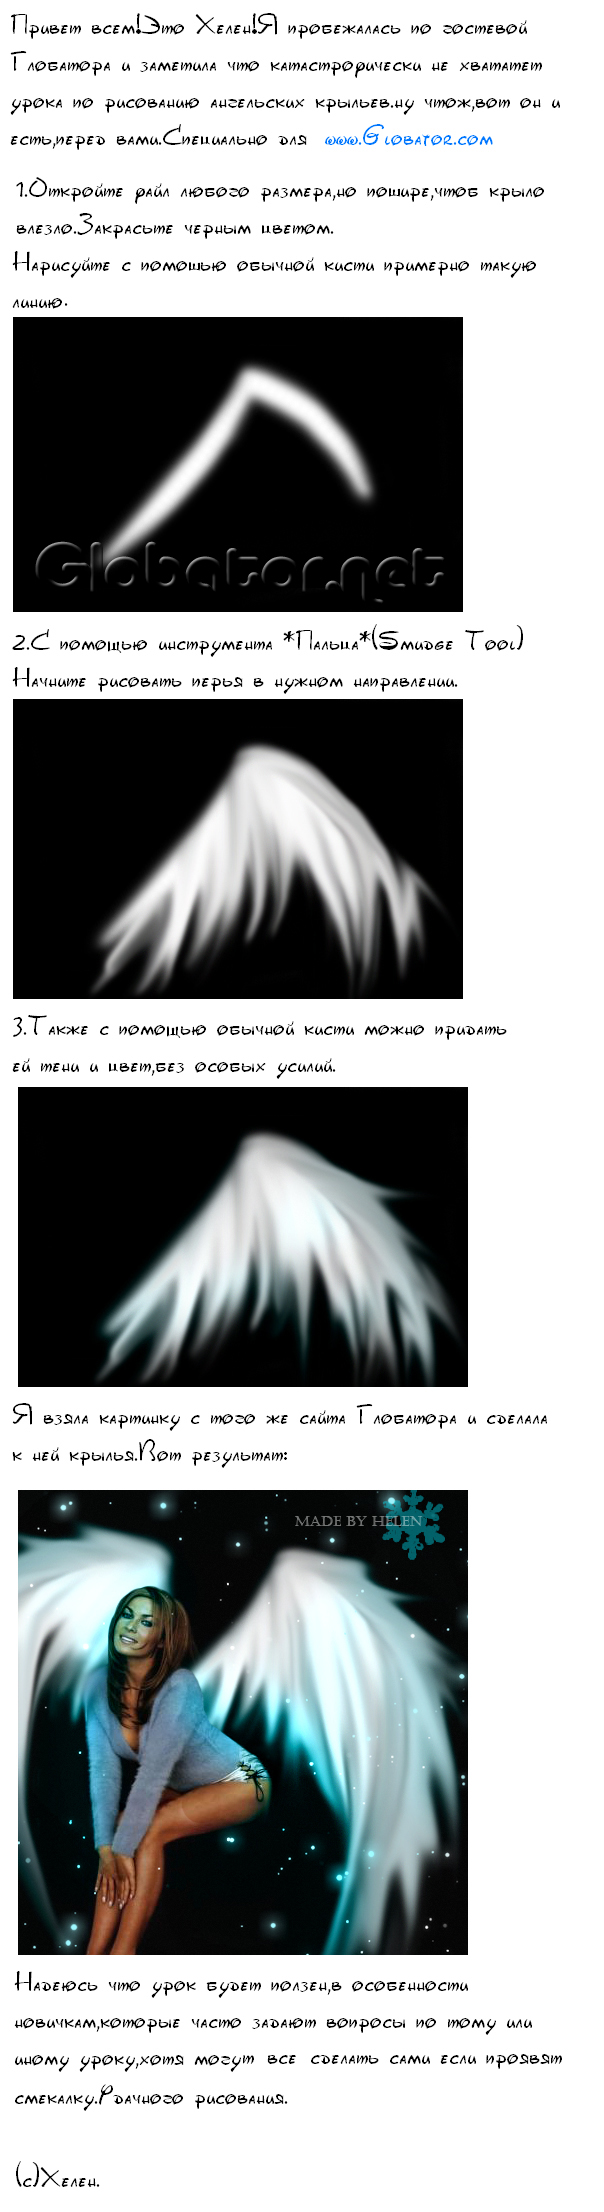 Ангельские крылья в Adobe Photoshop